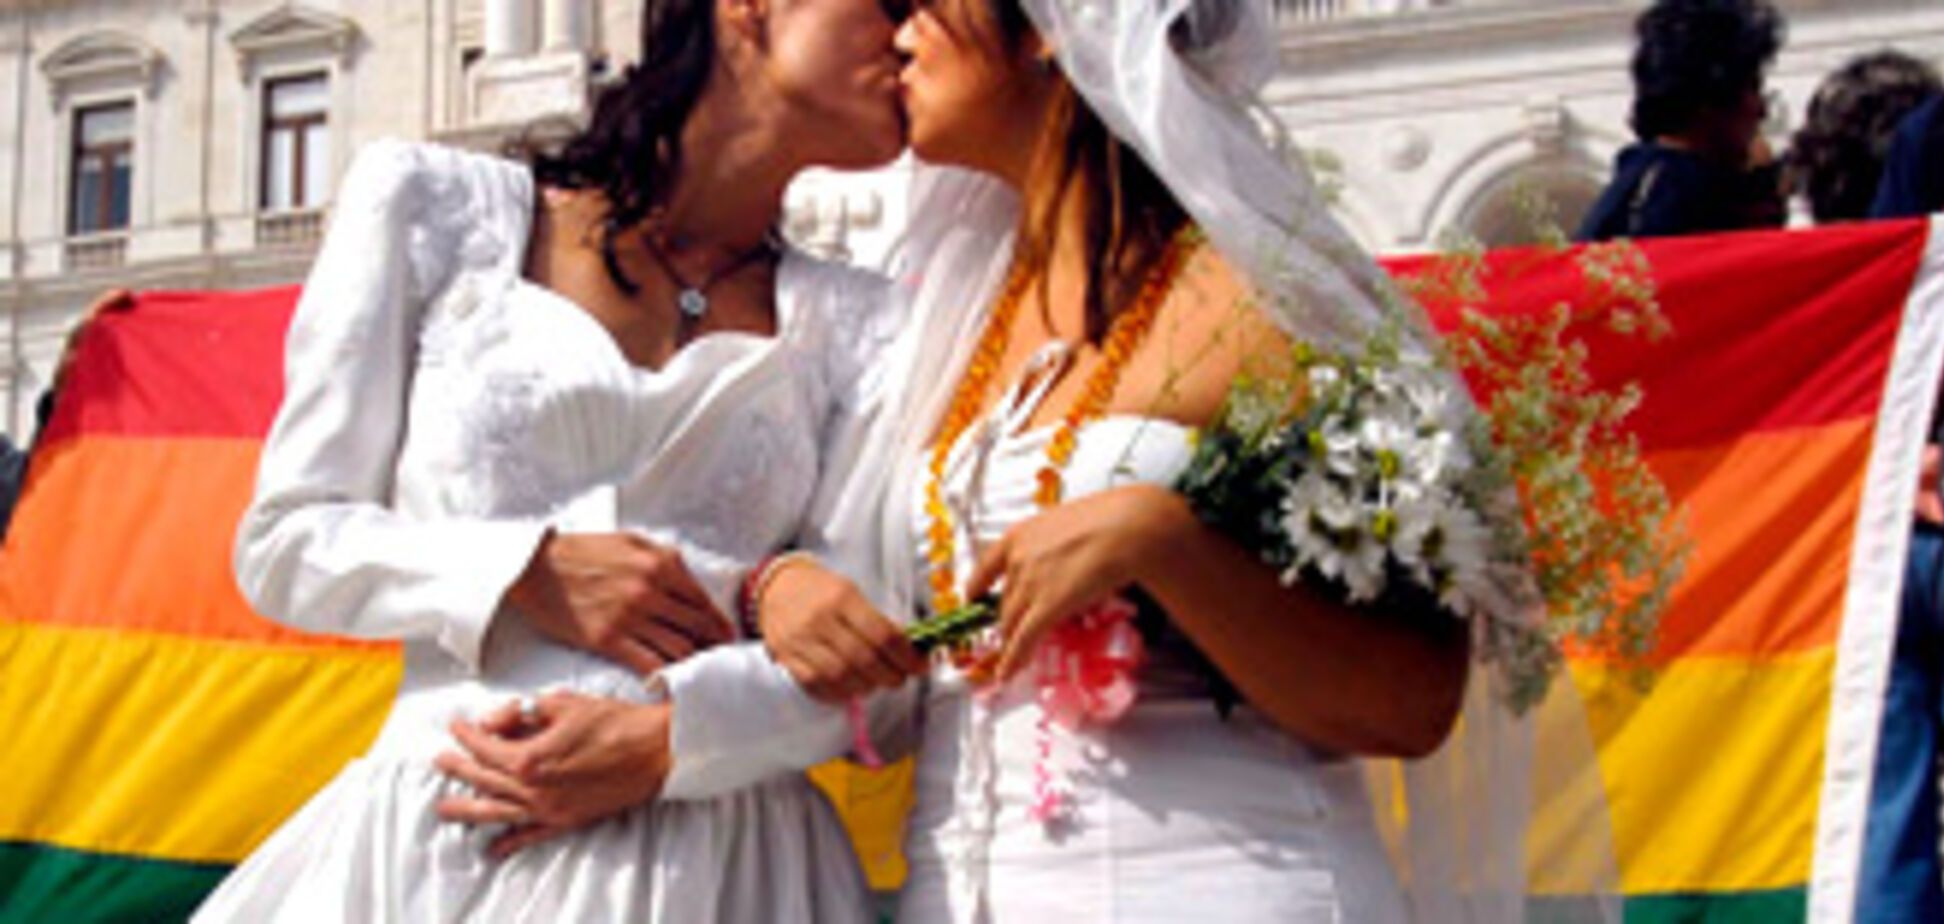 В Калифорнии могут разрешить однополые браки.ФОТО